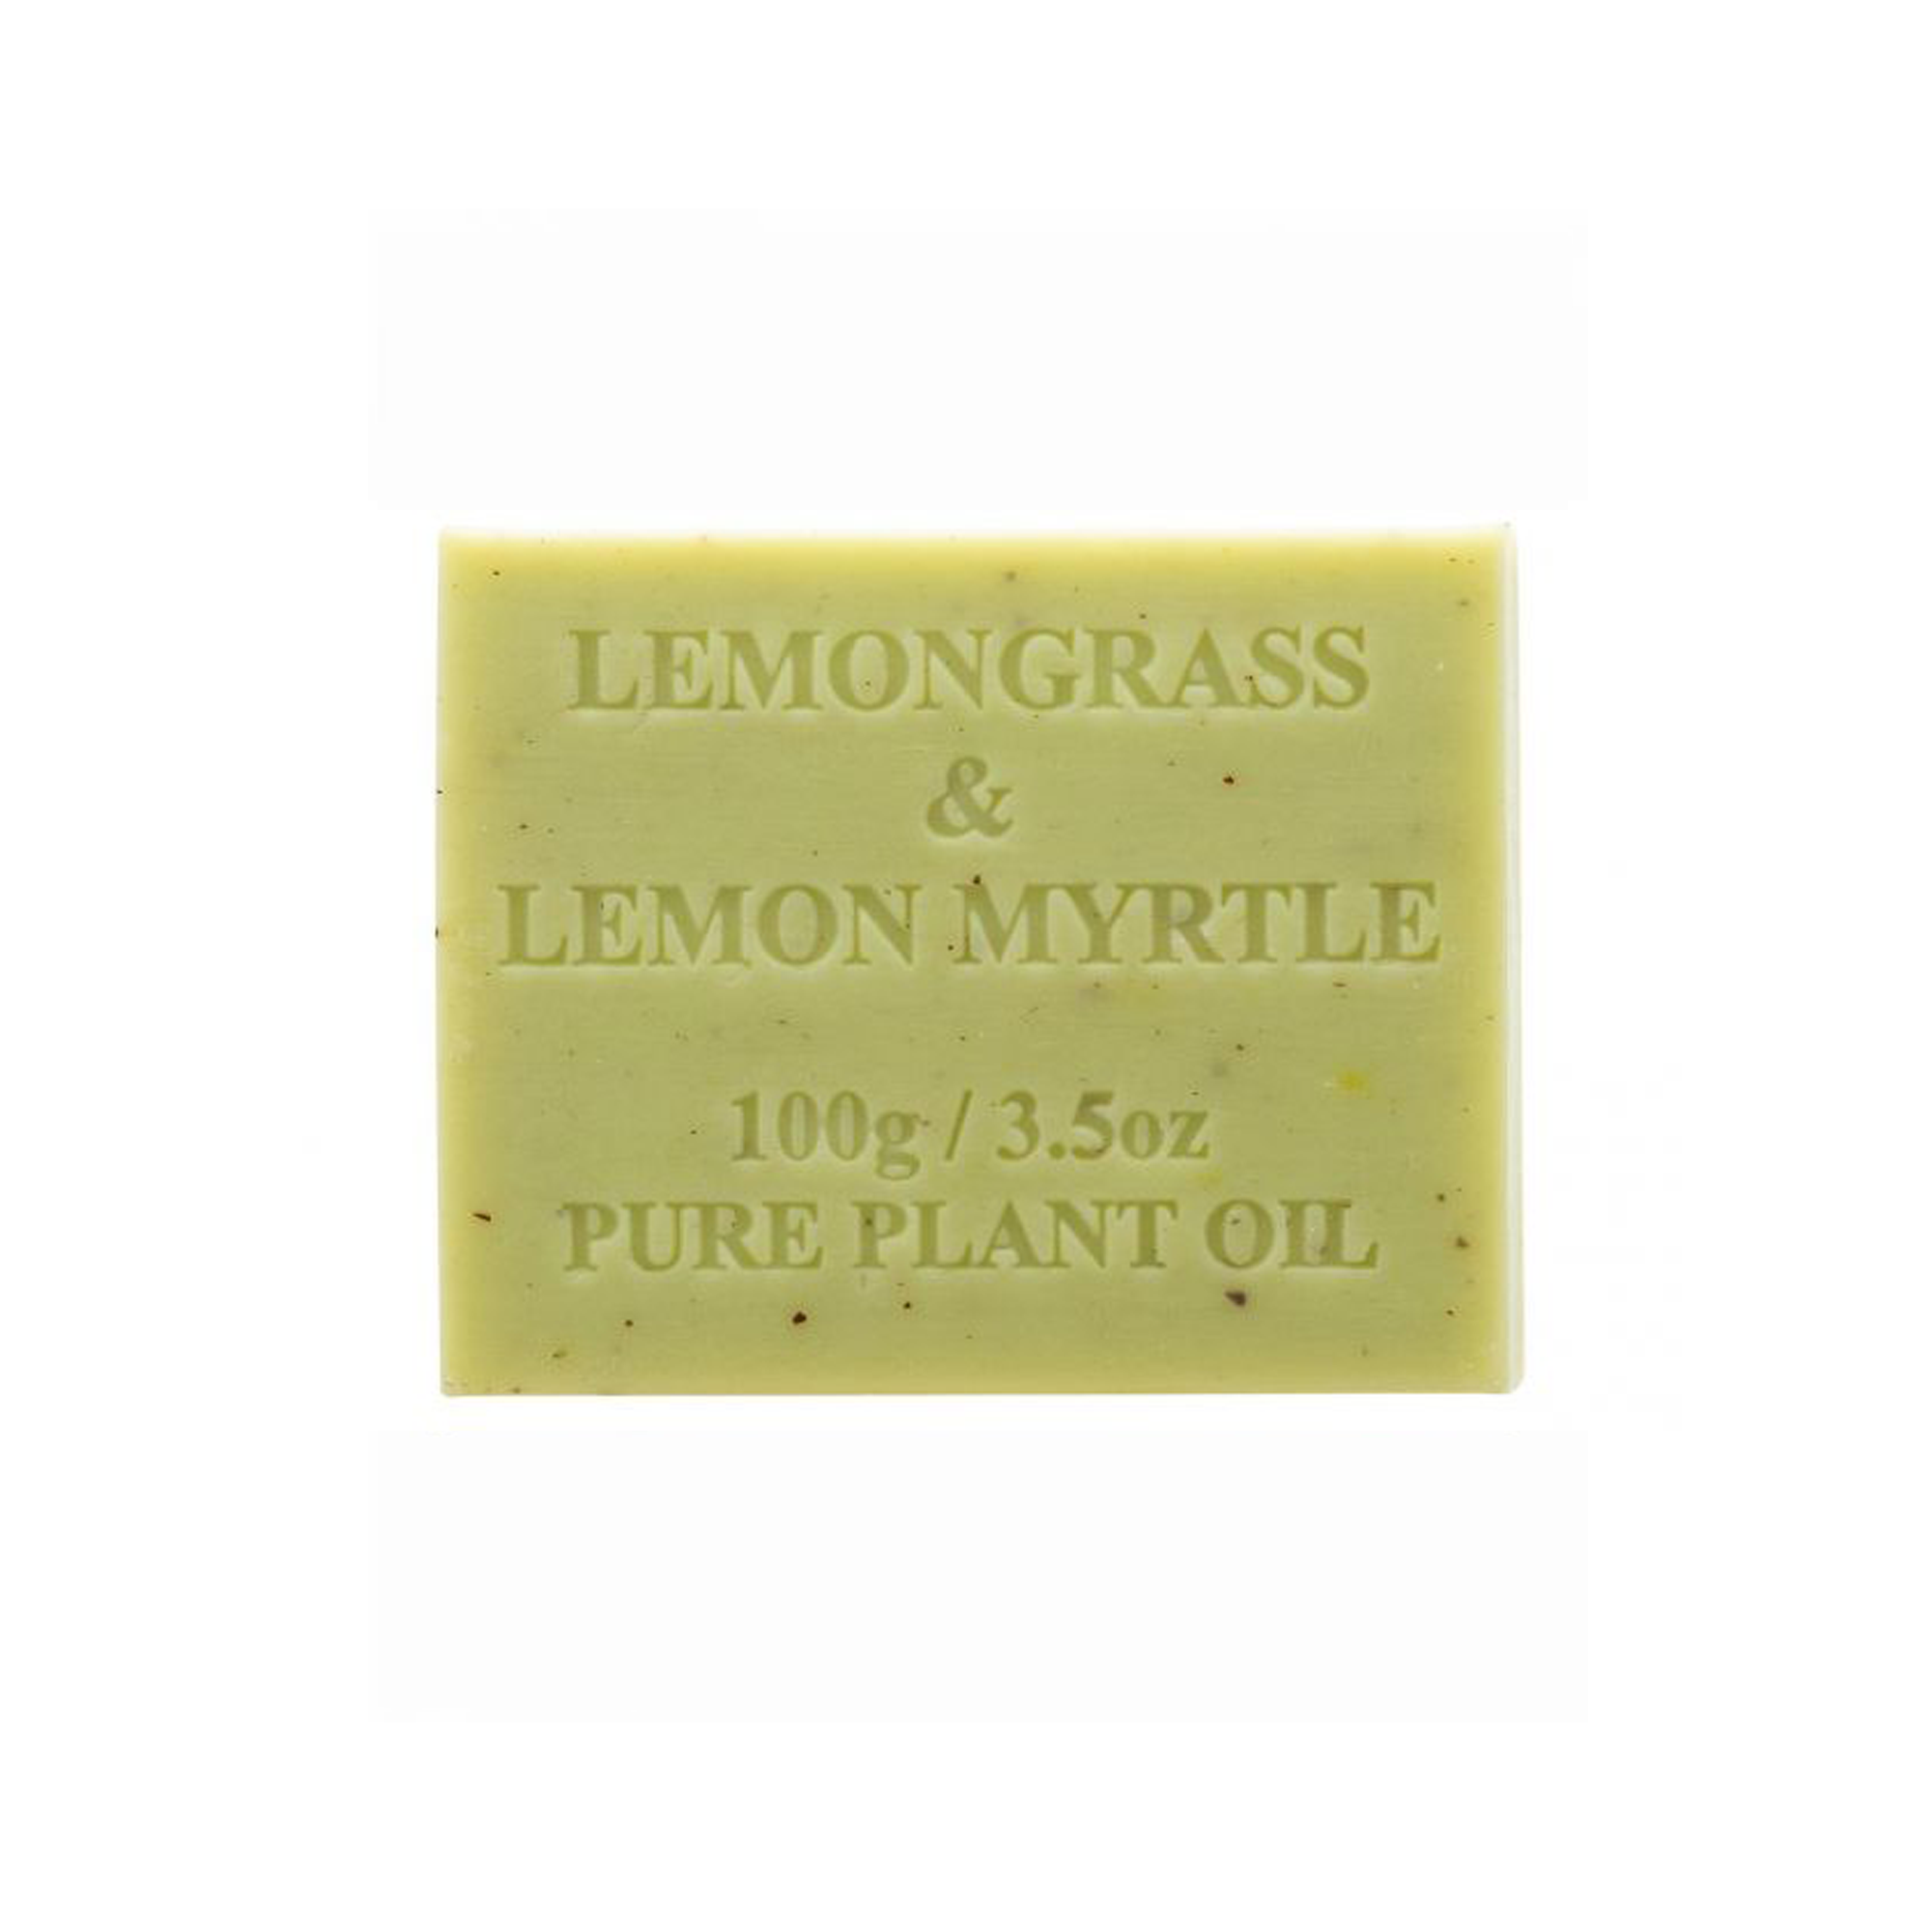 Lemongrass and Lemon Myrtle 100g